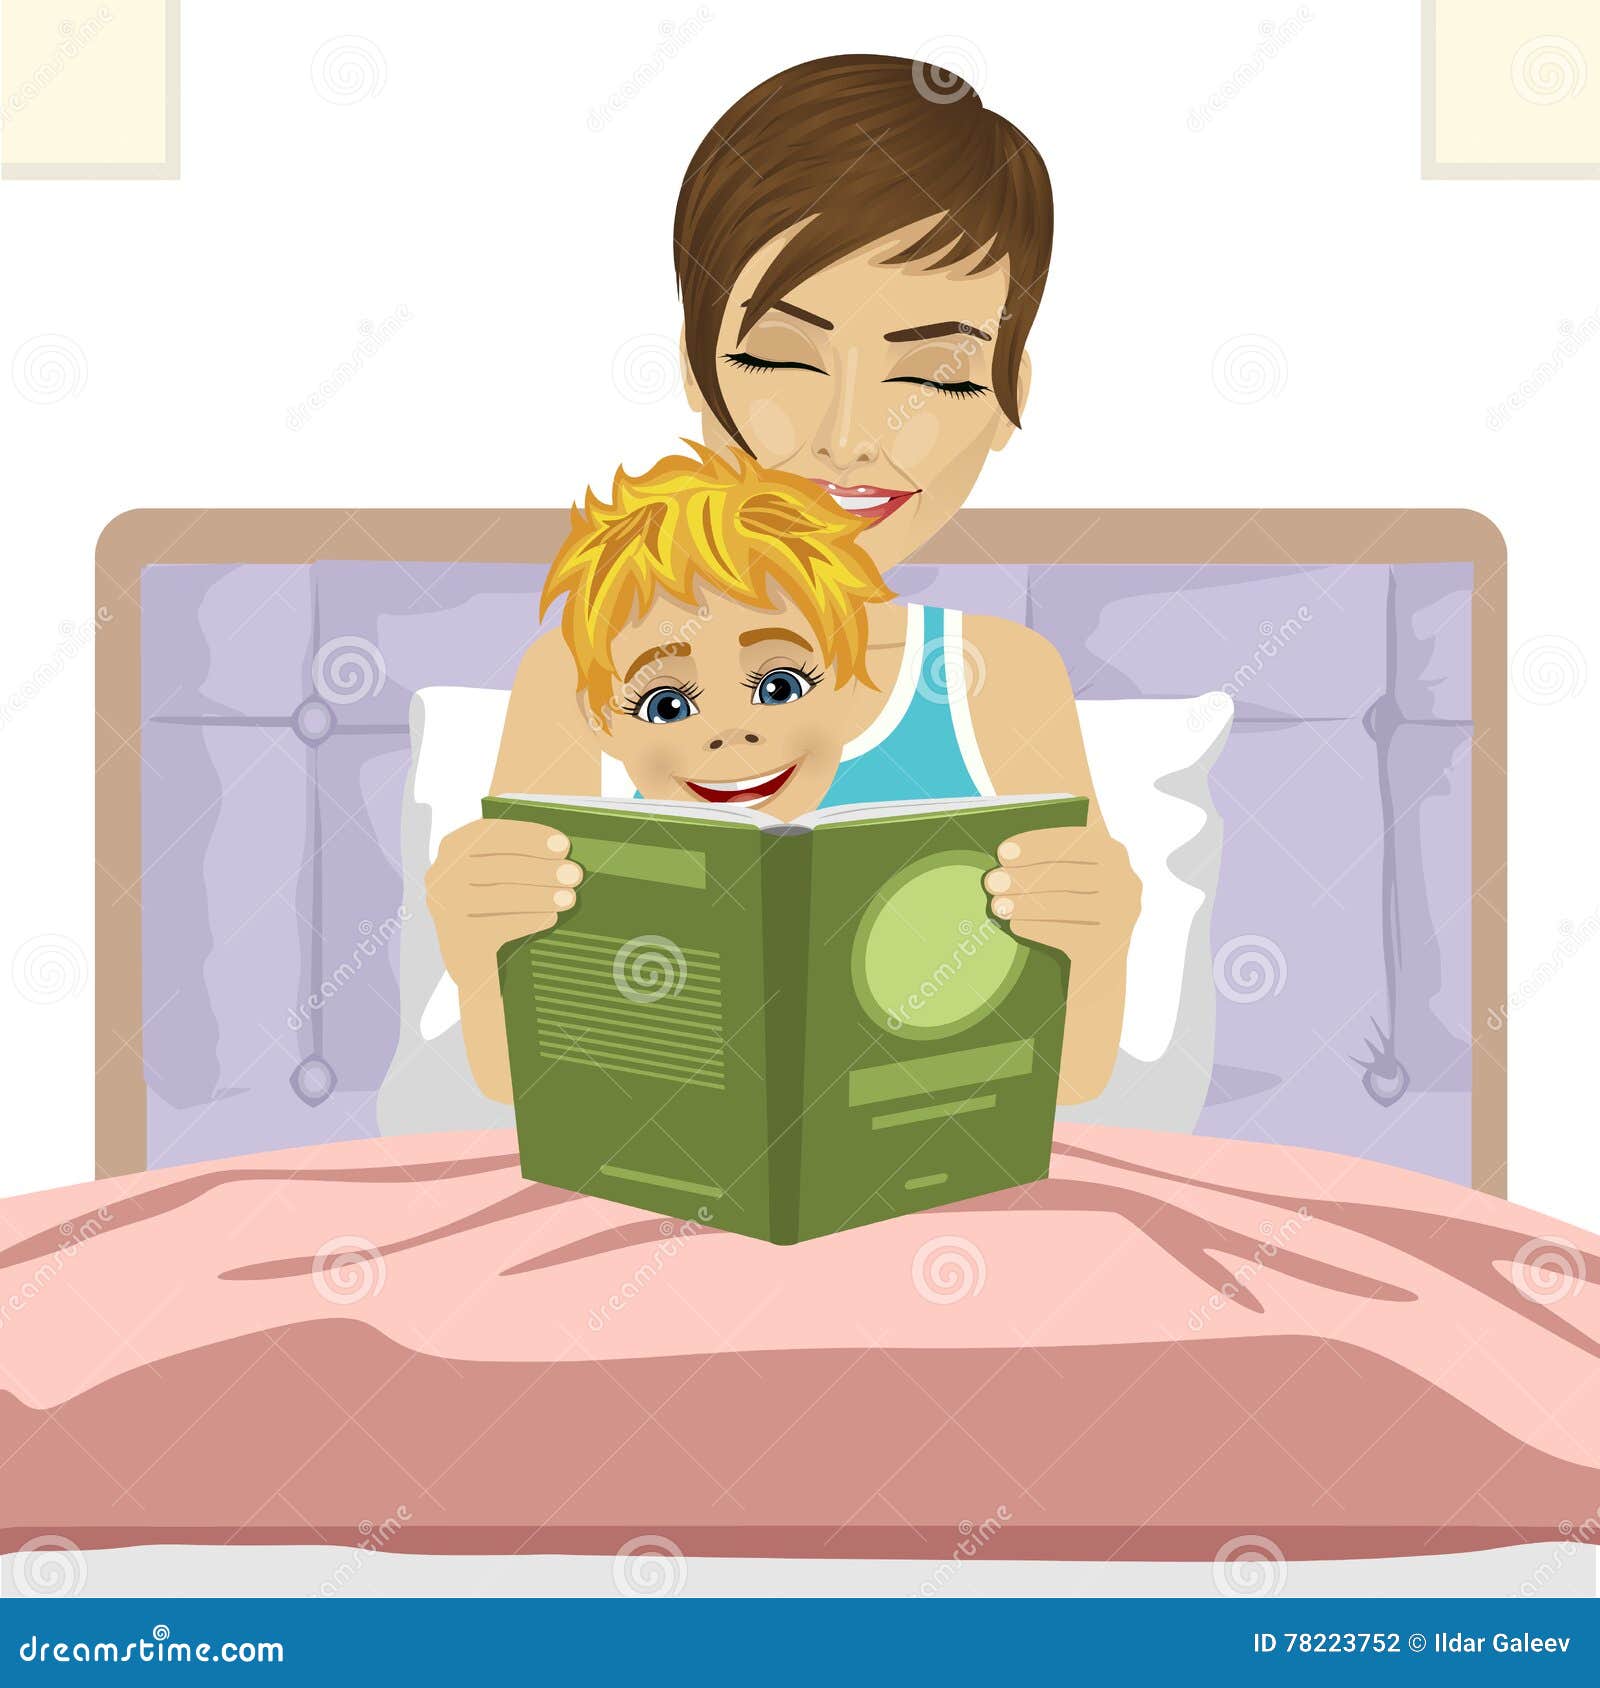 Видео читающая мама. Мама читает книжку ребенку иллюстрация. Рисуем мама читает книгу. Мама читает книжку ребенку. Мама читает книгу ребенку перед сном рисунок.